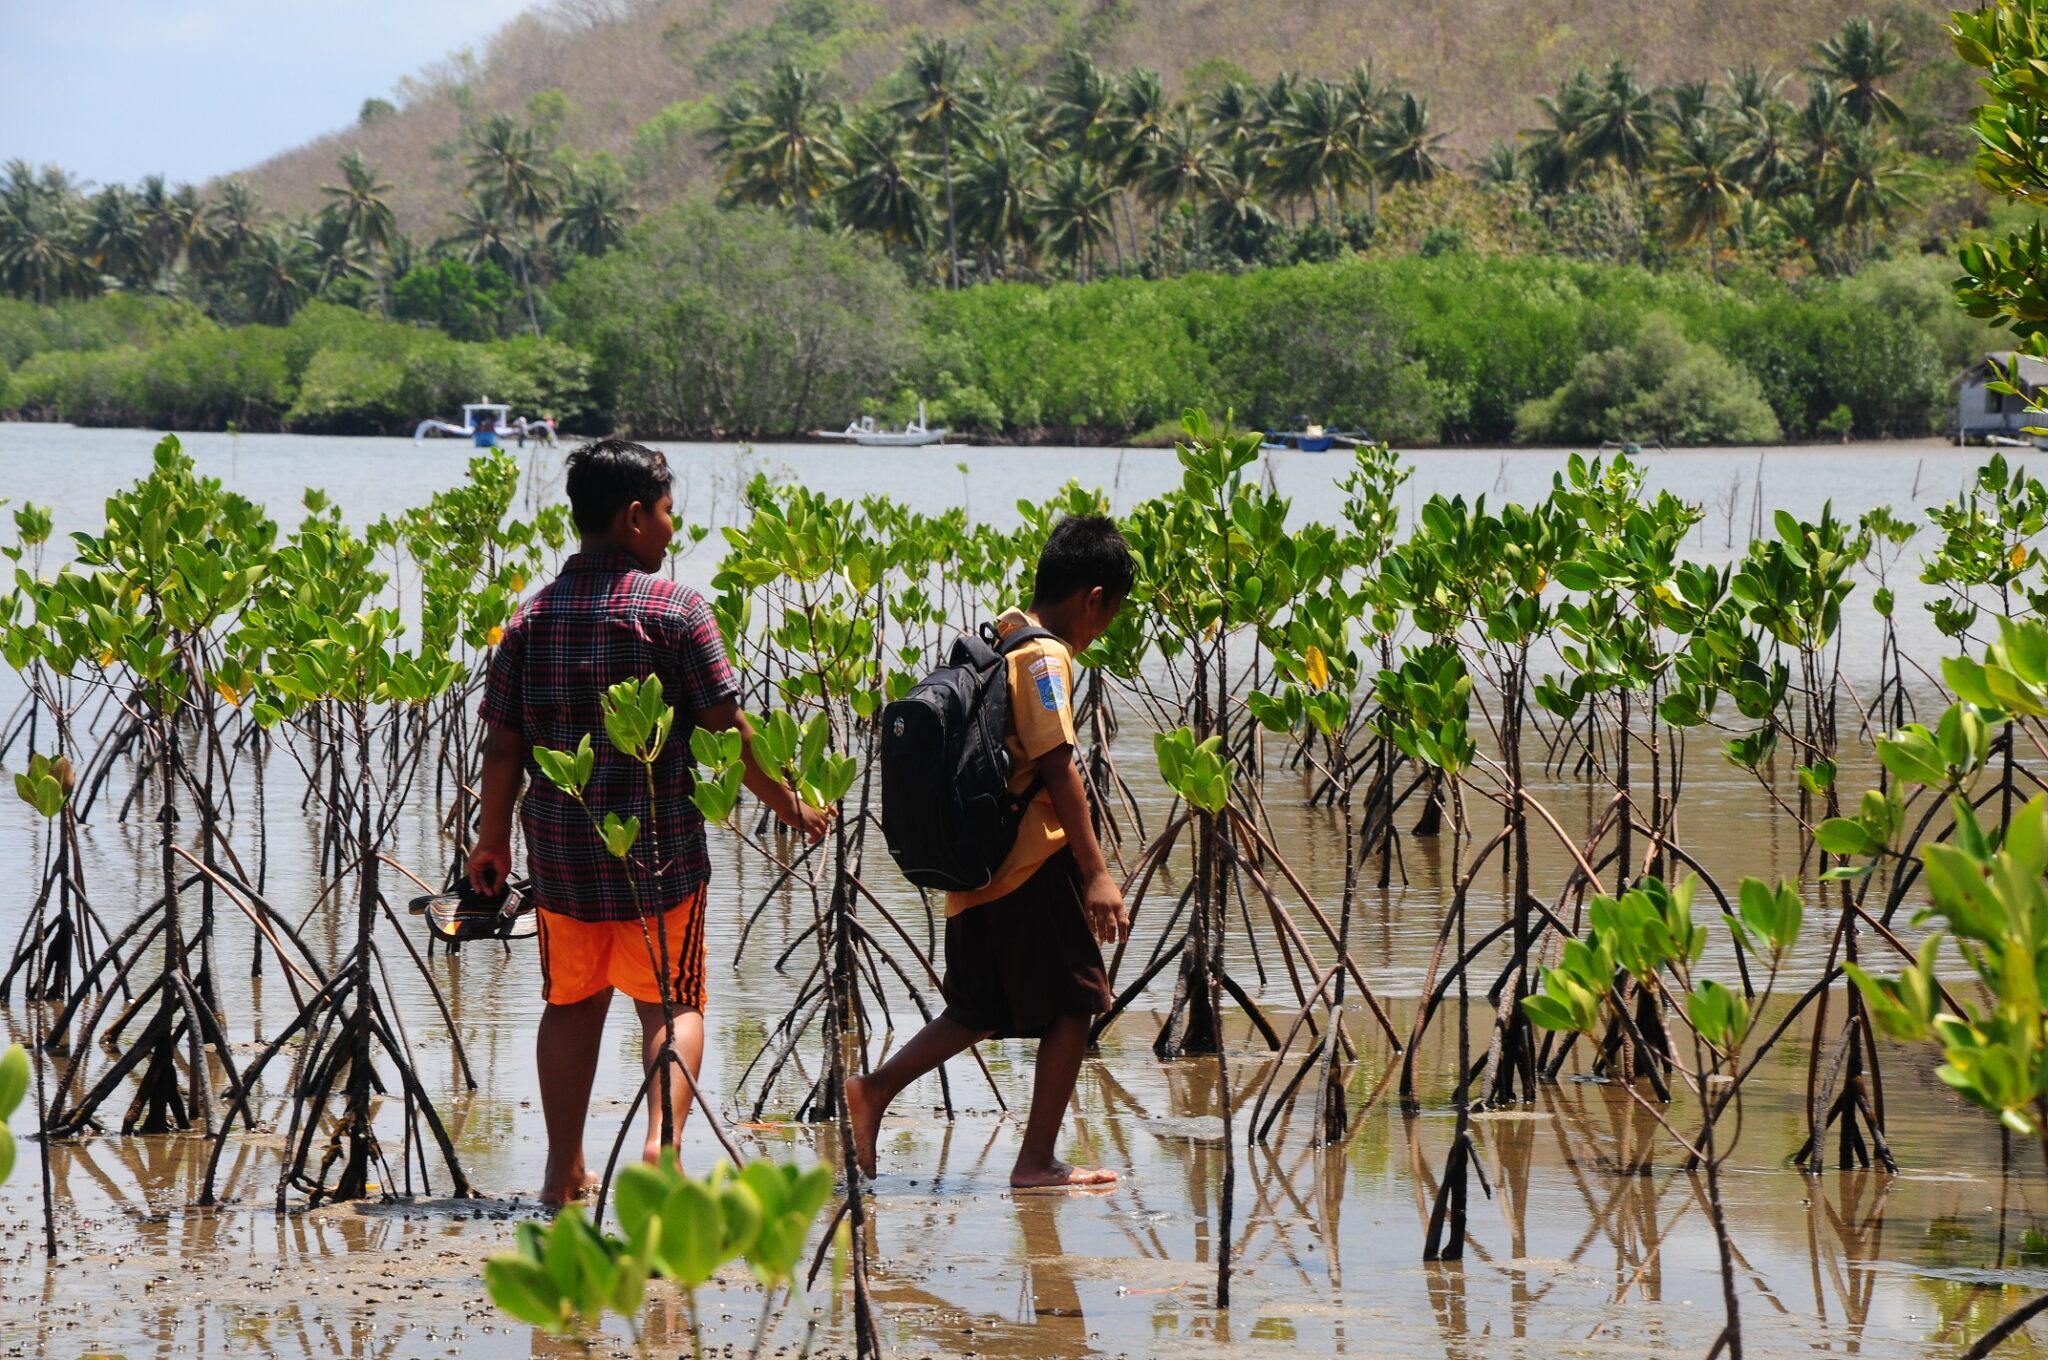 Anak-anak di Sekotong pulang sekolah melewati tanaman bakau yang sudah mulai tumbuh. Keberadaan mangrove di tempat ini menyelamatkan akses satu-satunya jalan dari abrasi akibat air laut. Foto : Fathul Rakhman/Mongabay Indonesia